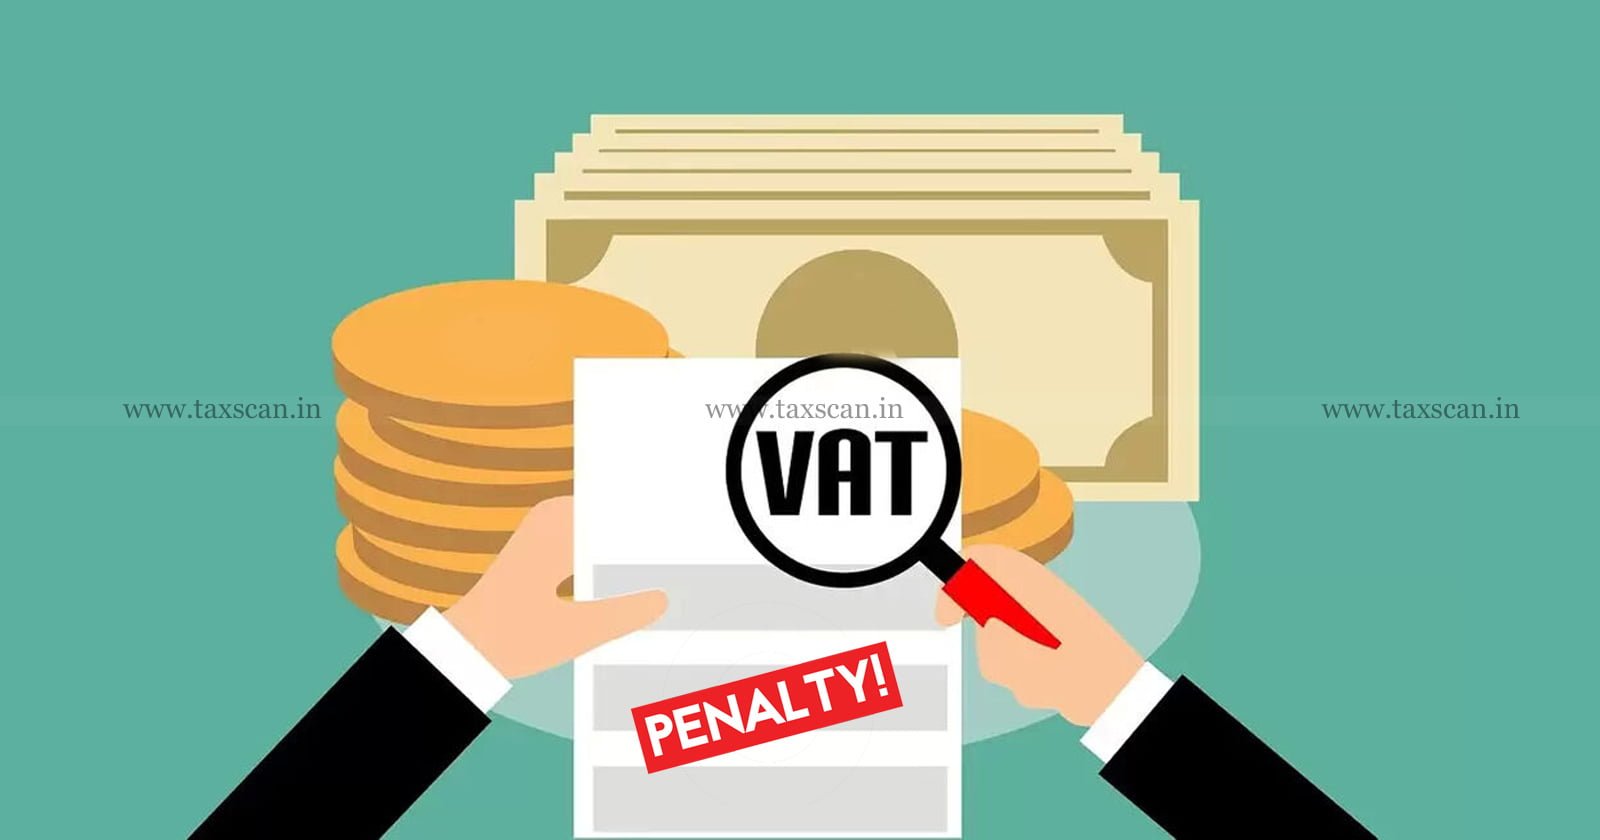 VAT - Penalty - Evade Tax - Tax - Punjab and Haryana High Court - taxscan